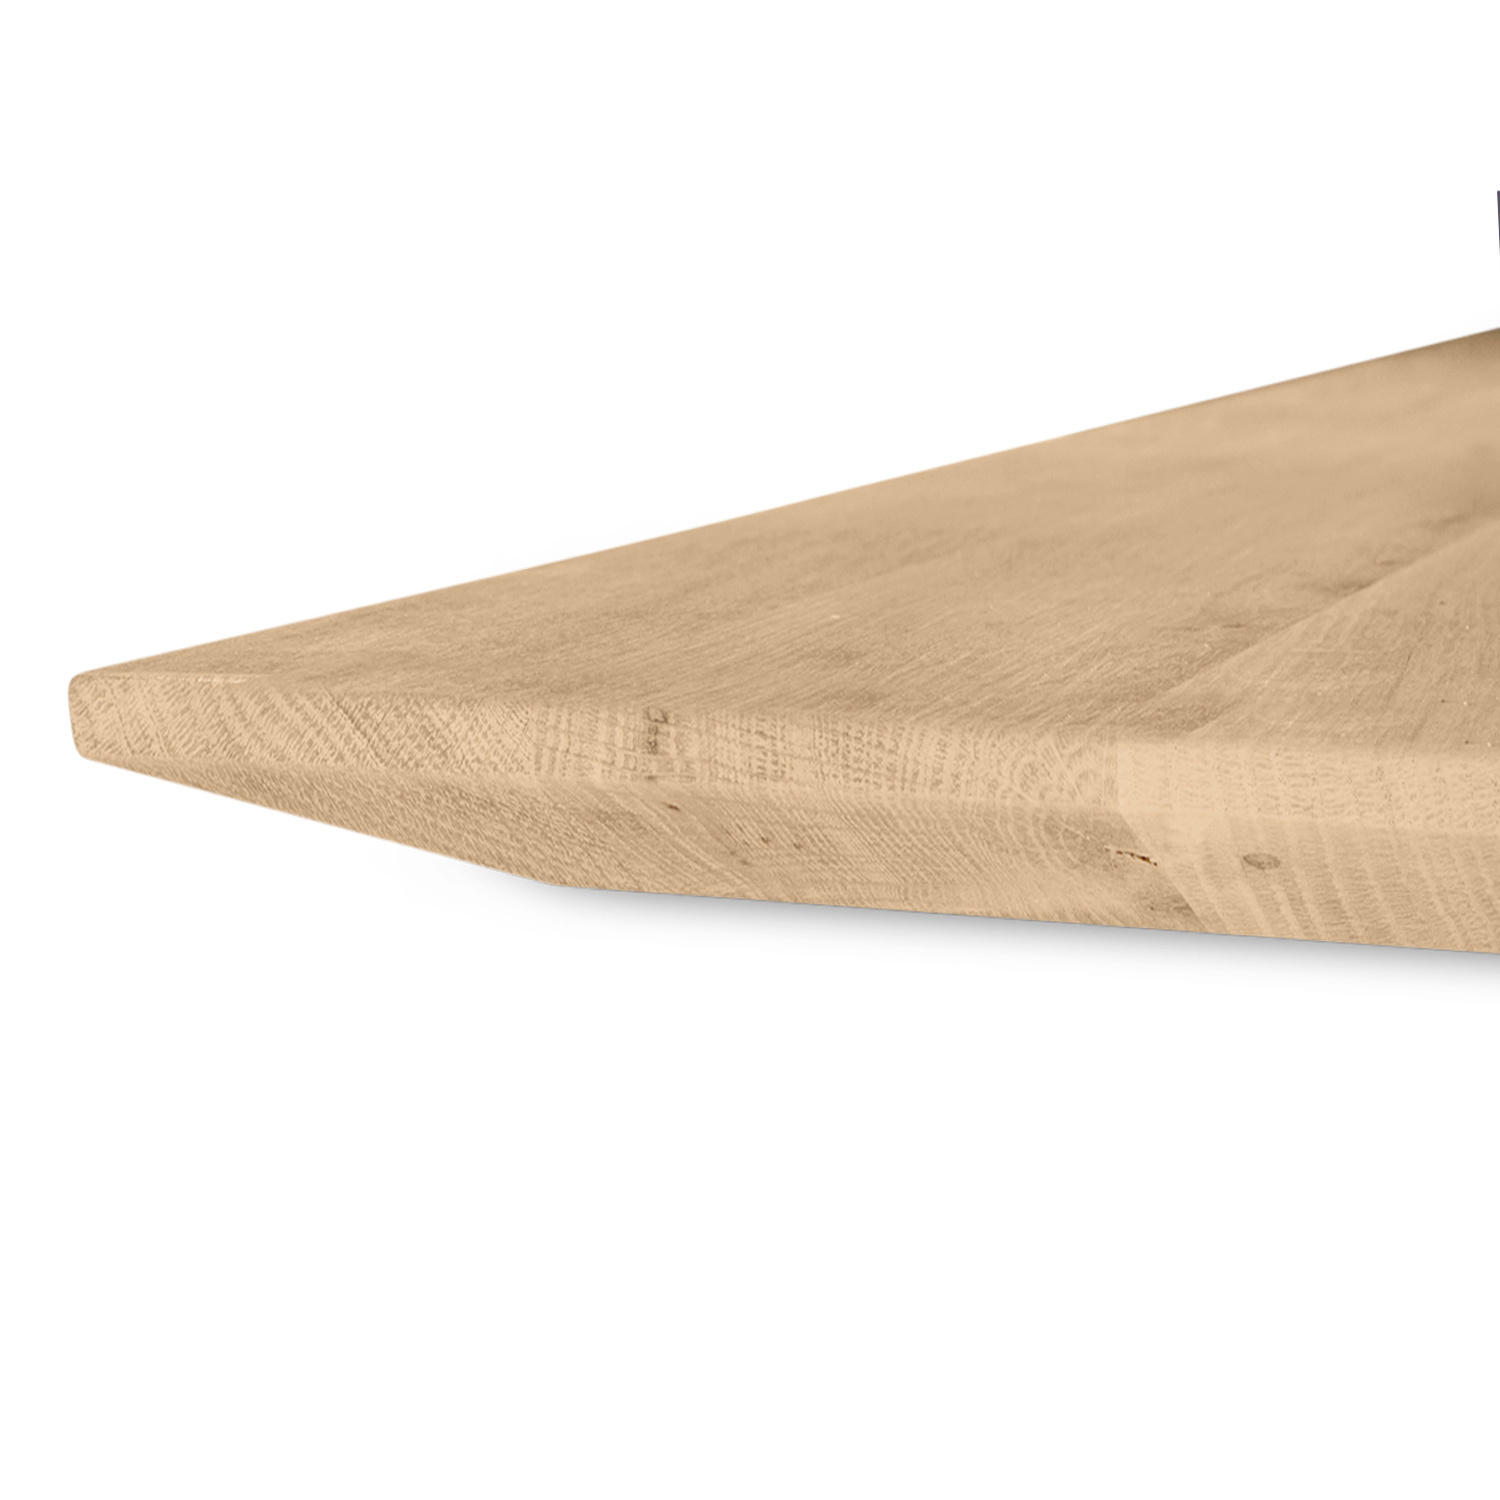  Tischplatte Eiche - Schweizer Kante - 4 cm dick (1-Schicht) - Breite Lamellen (10 - 12 cm breit) - Eichenholz rustikal - verleimt & künstlich getrocknet (HF 8-12%) - verschiedene Größen